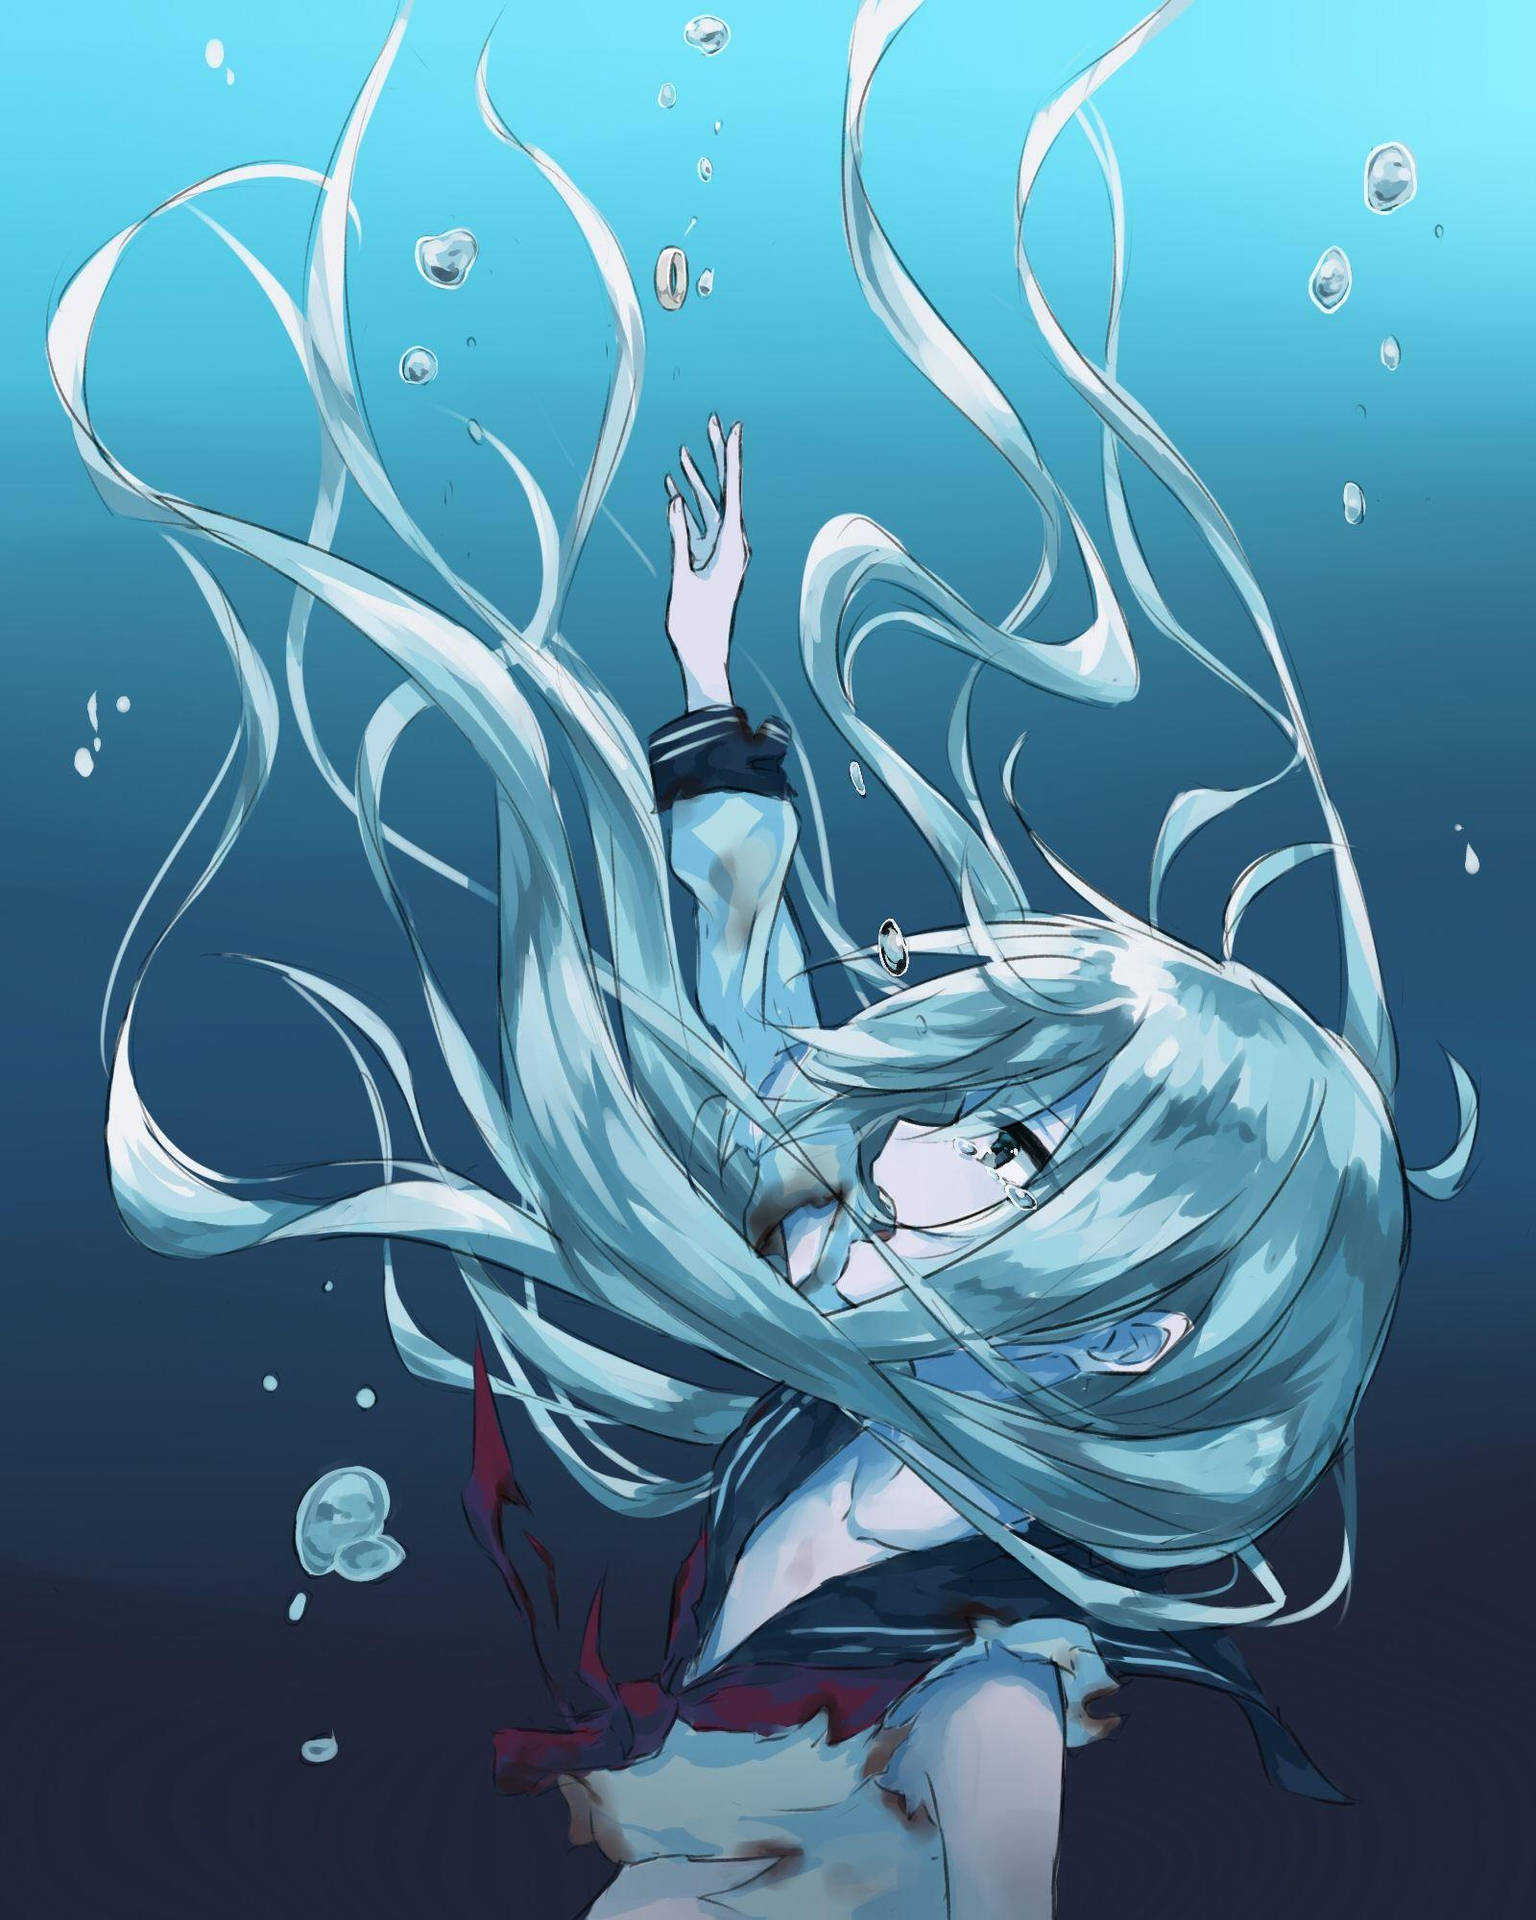 Sad Aesthetic Anime Girl Underwater Wallpaper